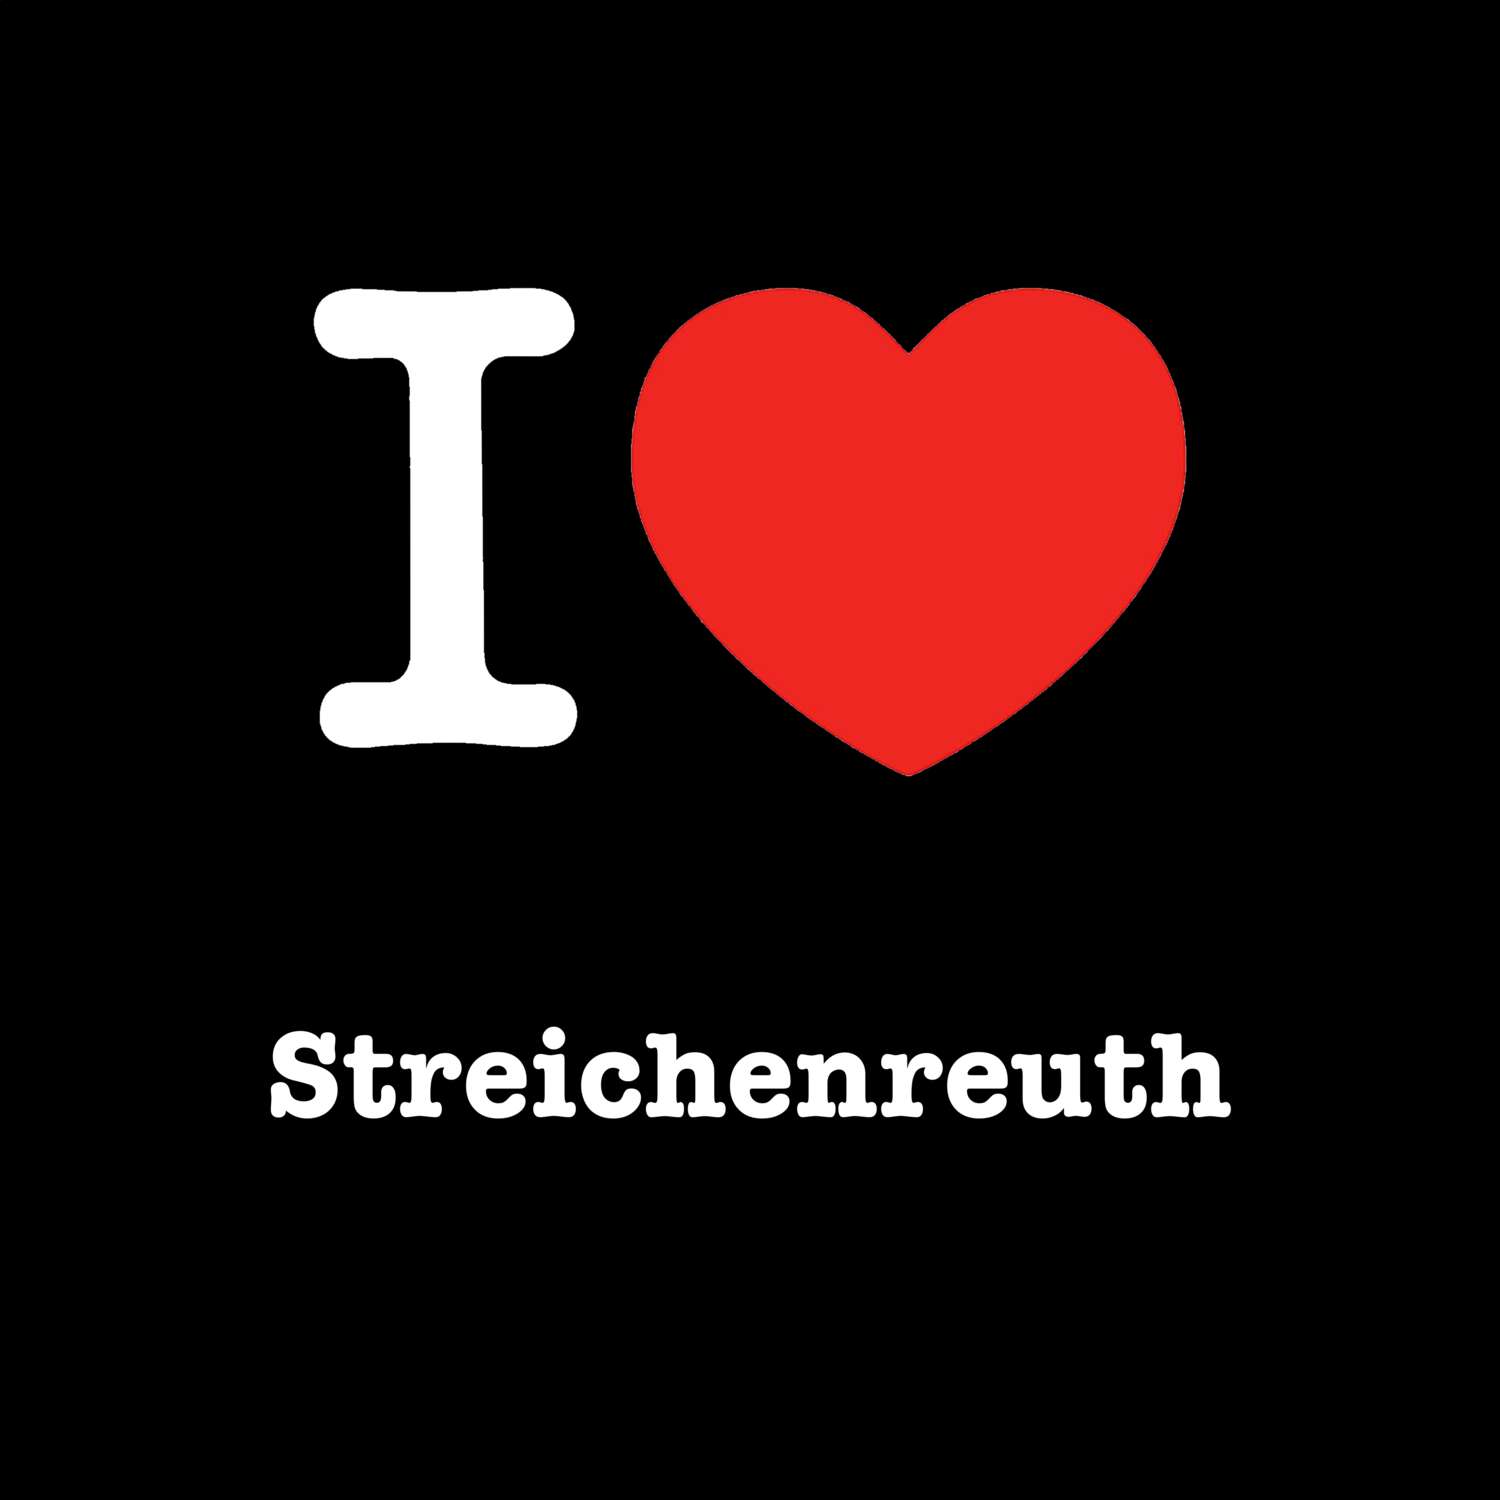 Streichenreuth T-Shirt »I love«